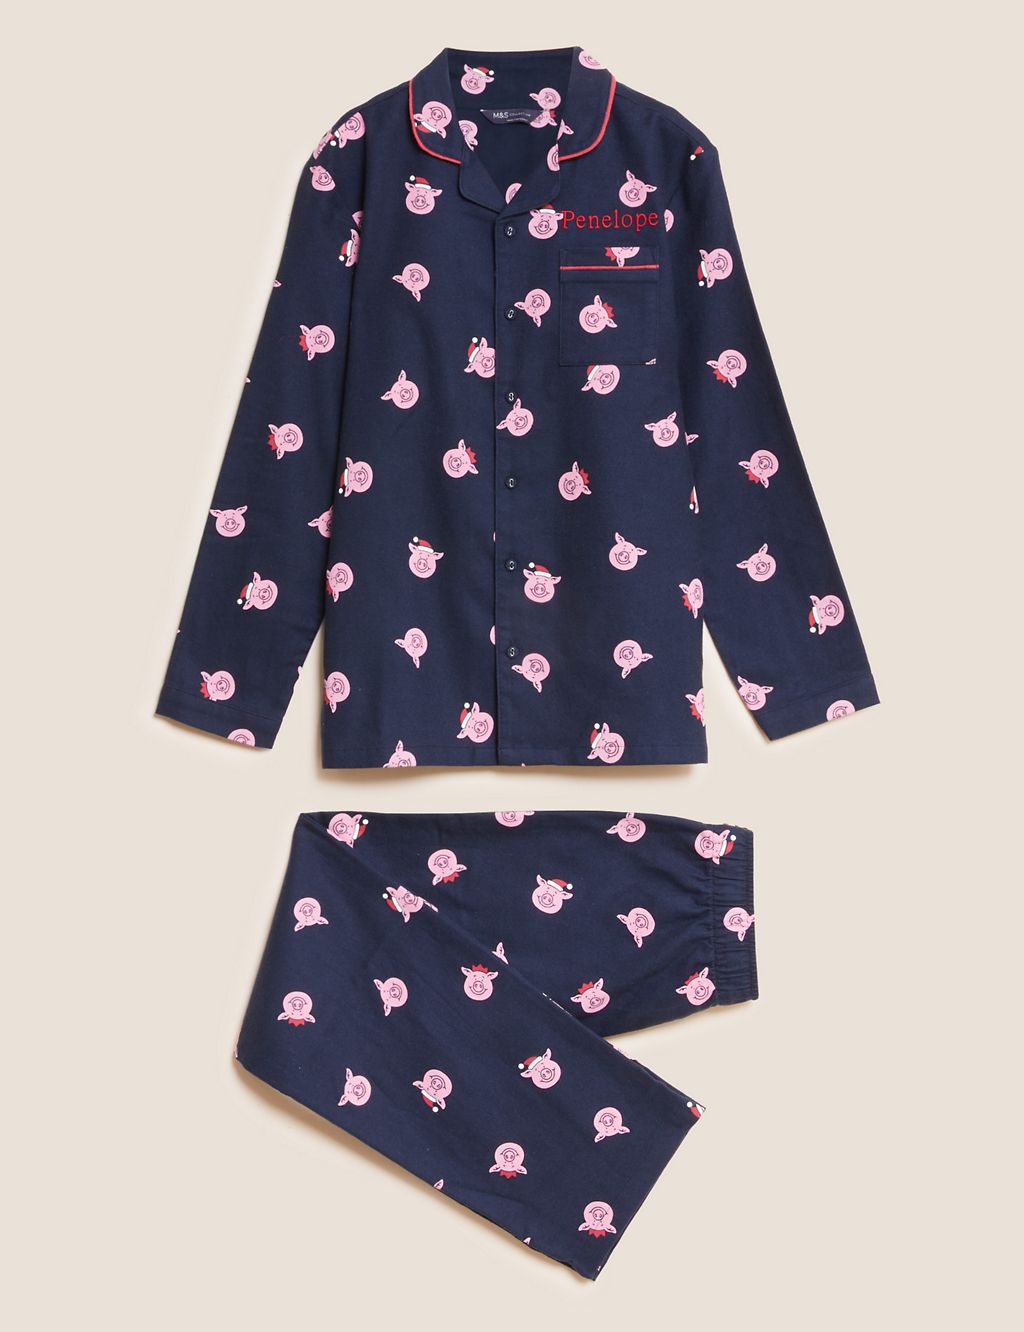 Personalised Kids' Percy Pig™ Pyjamas (2-16 Yrs) 1 of 2